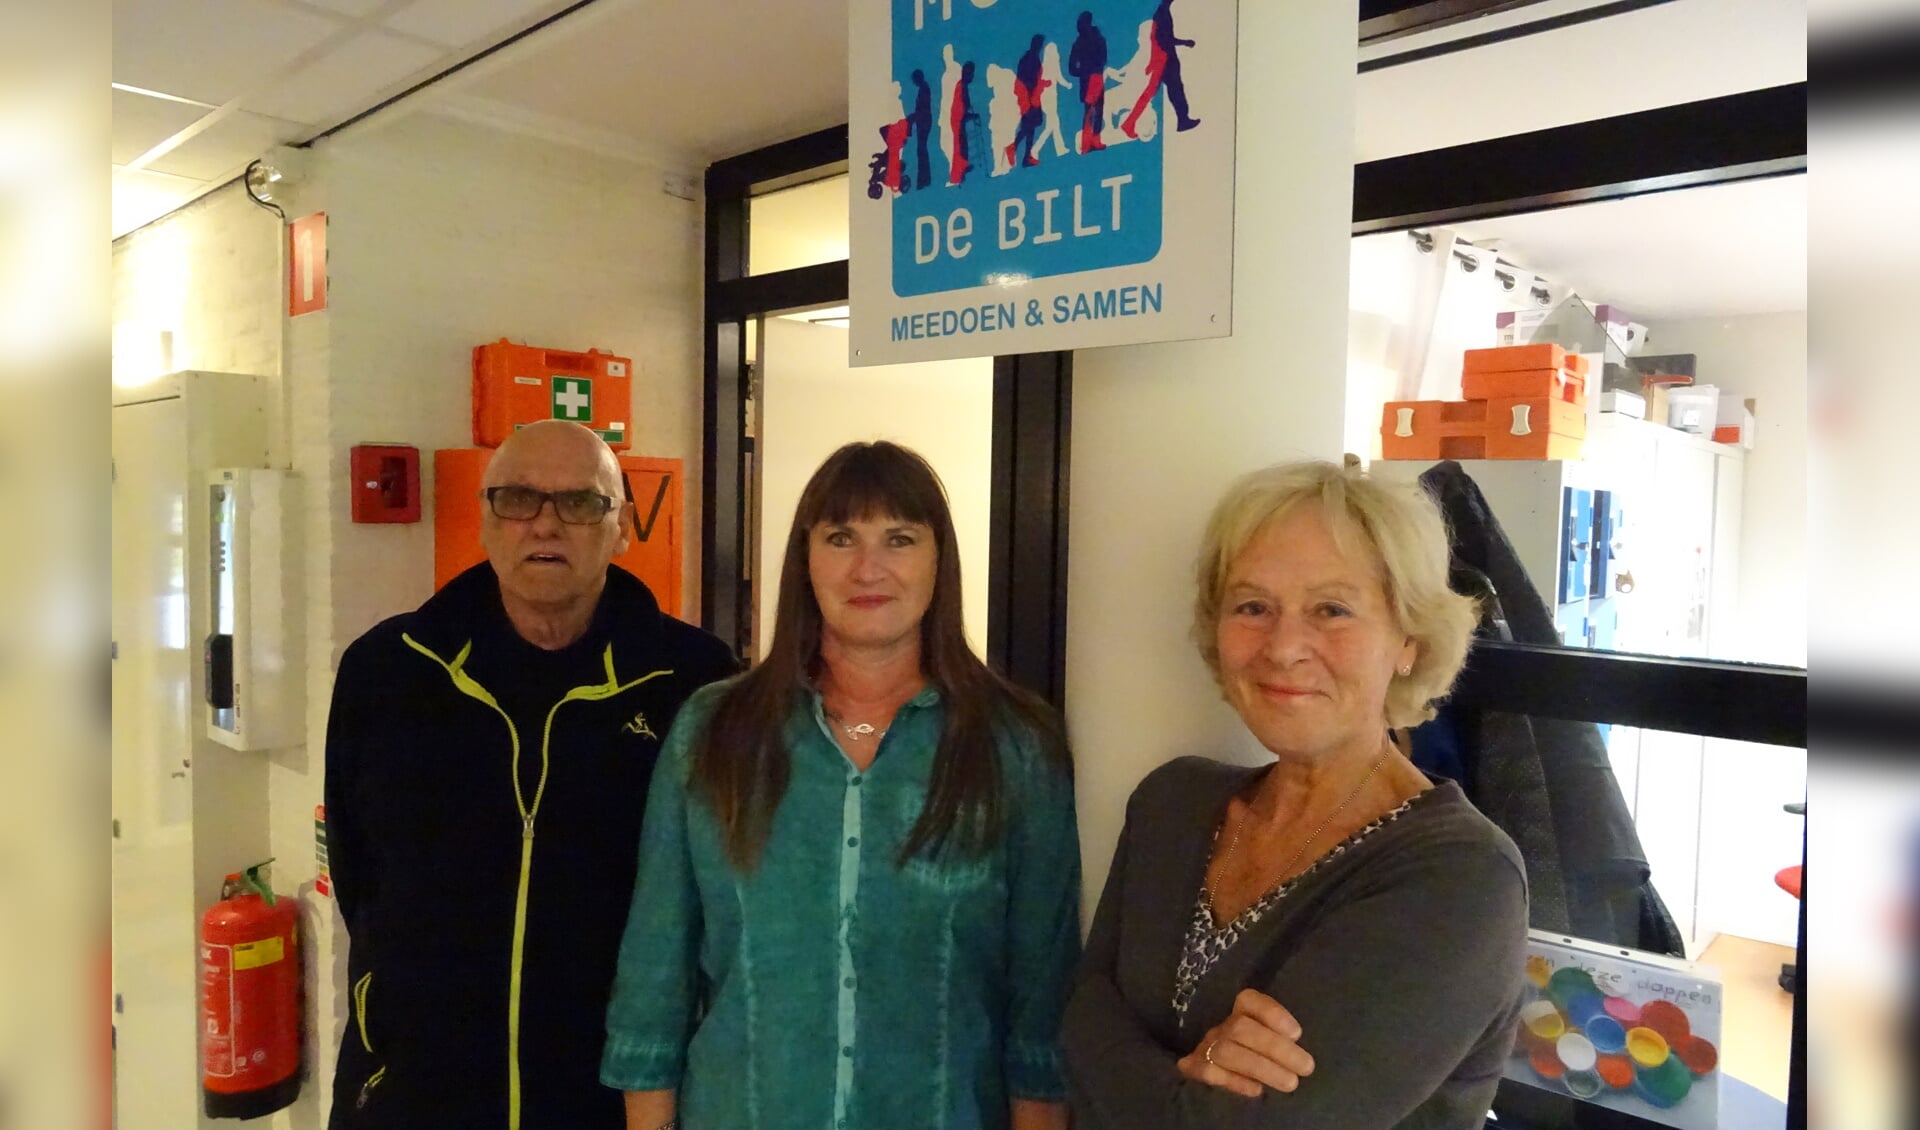 V.l.n.r.: Henk Kop, Wilma van Poelgeest en Marlies Willemse hopen dat er op 17 november weer veel mensen op de markt zullen komen. 